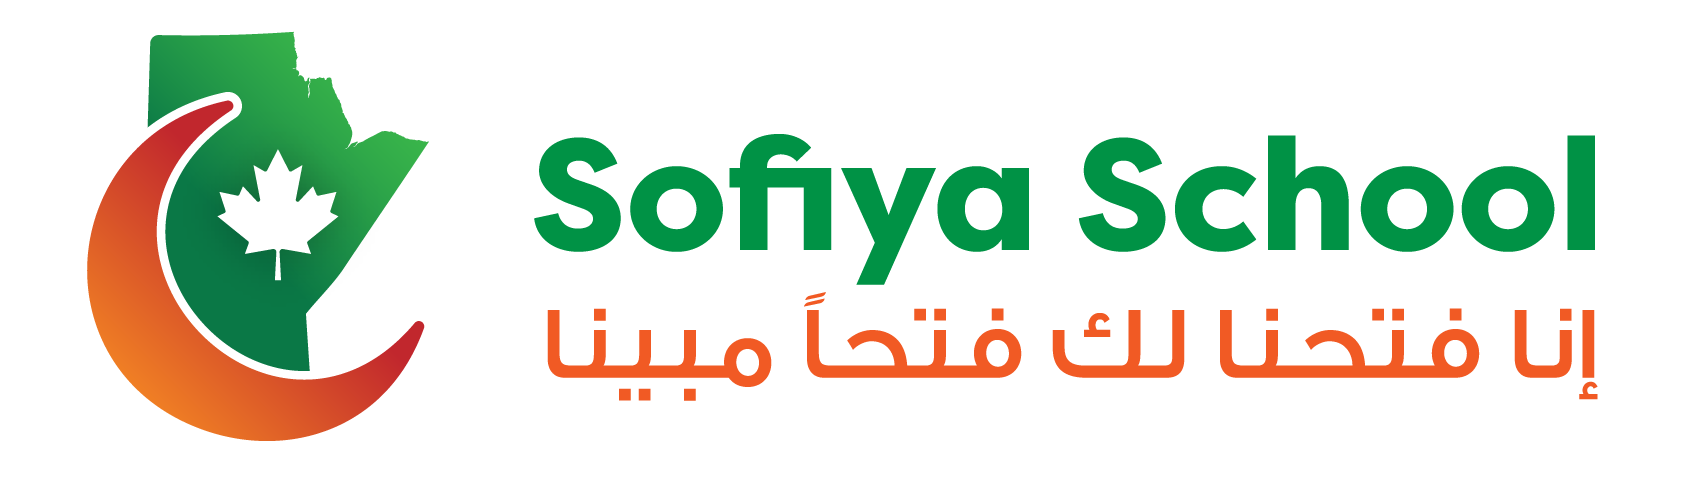 Sofiya School  | Islamic Academy of Manitoba